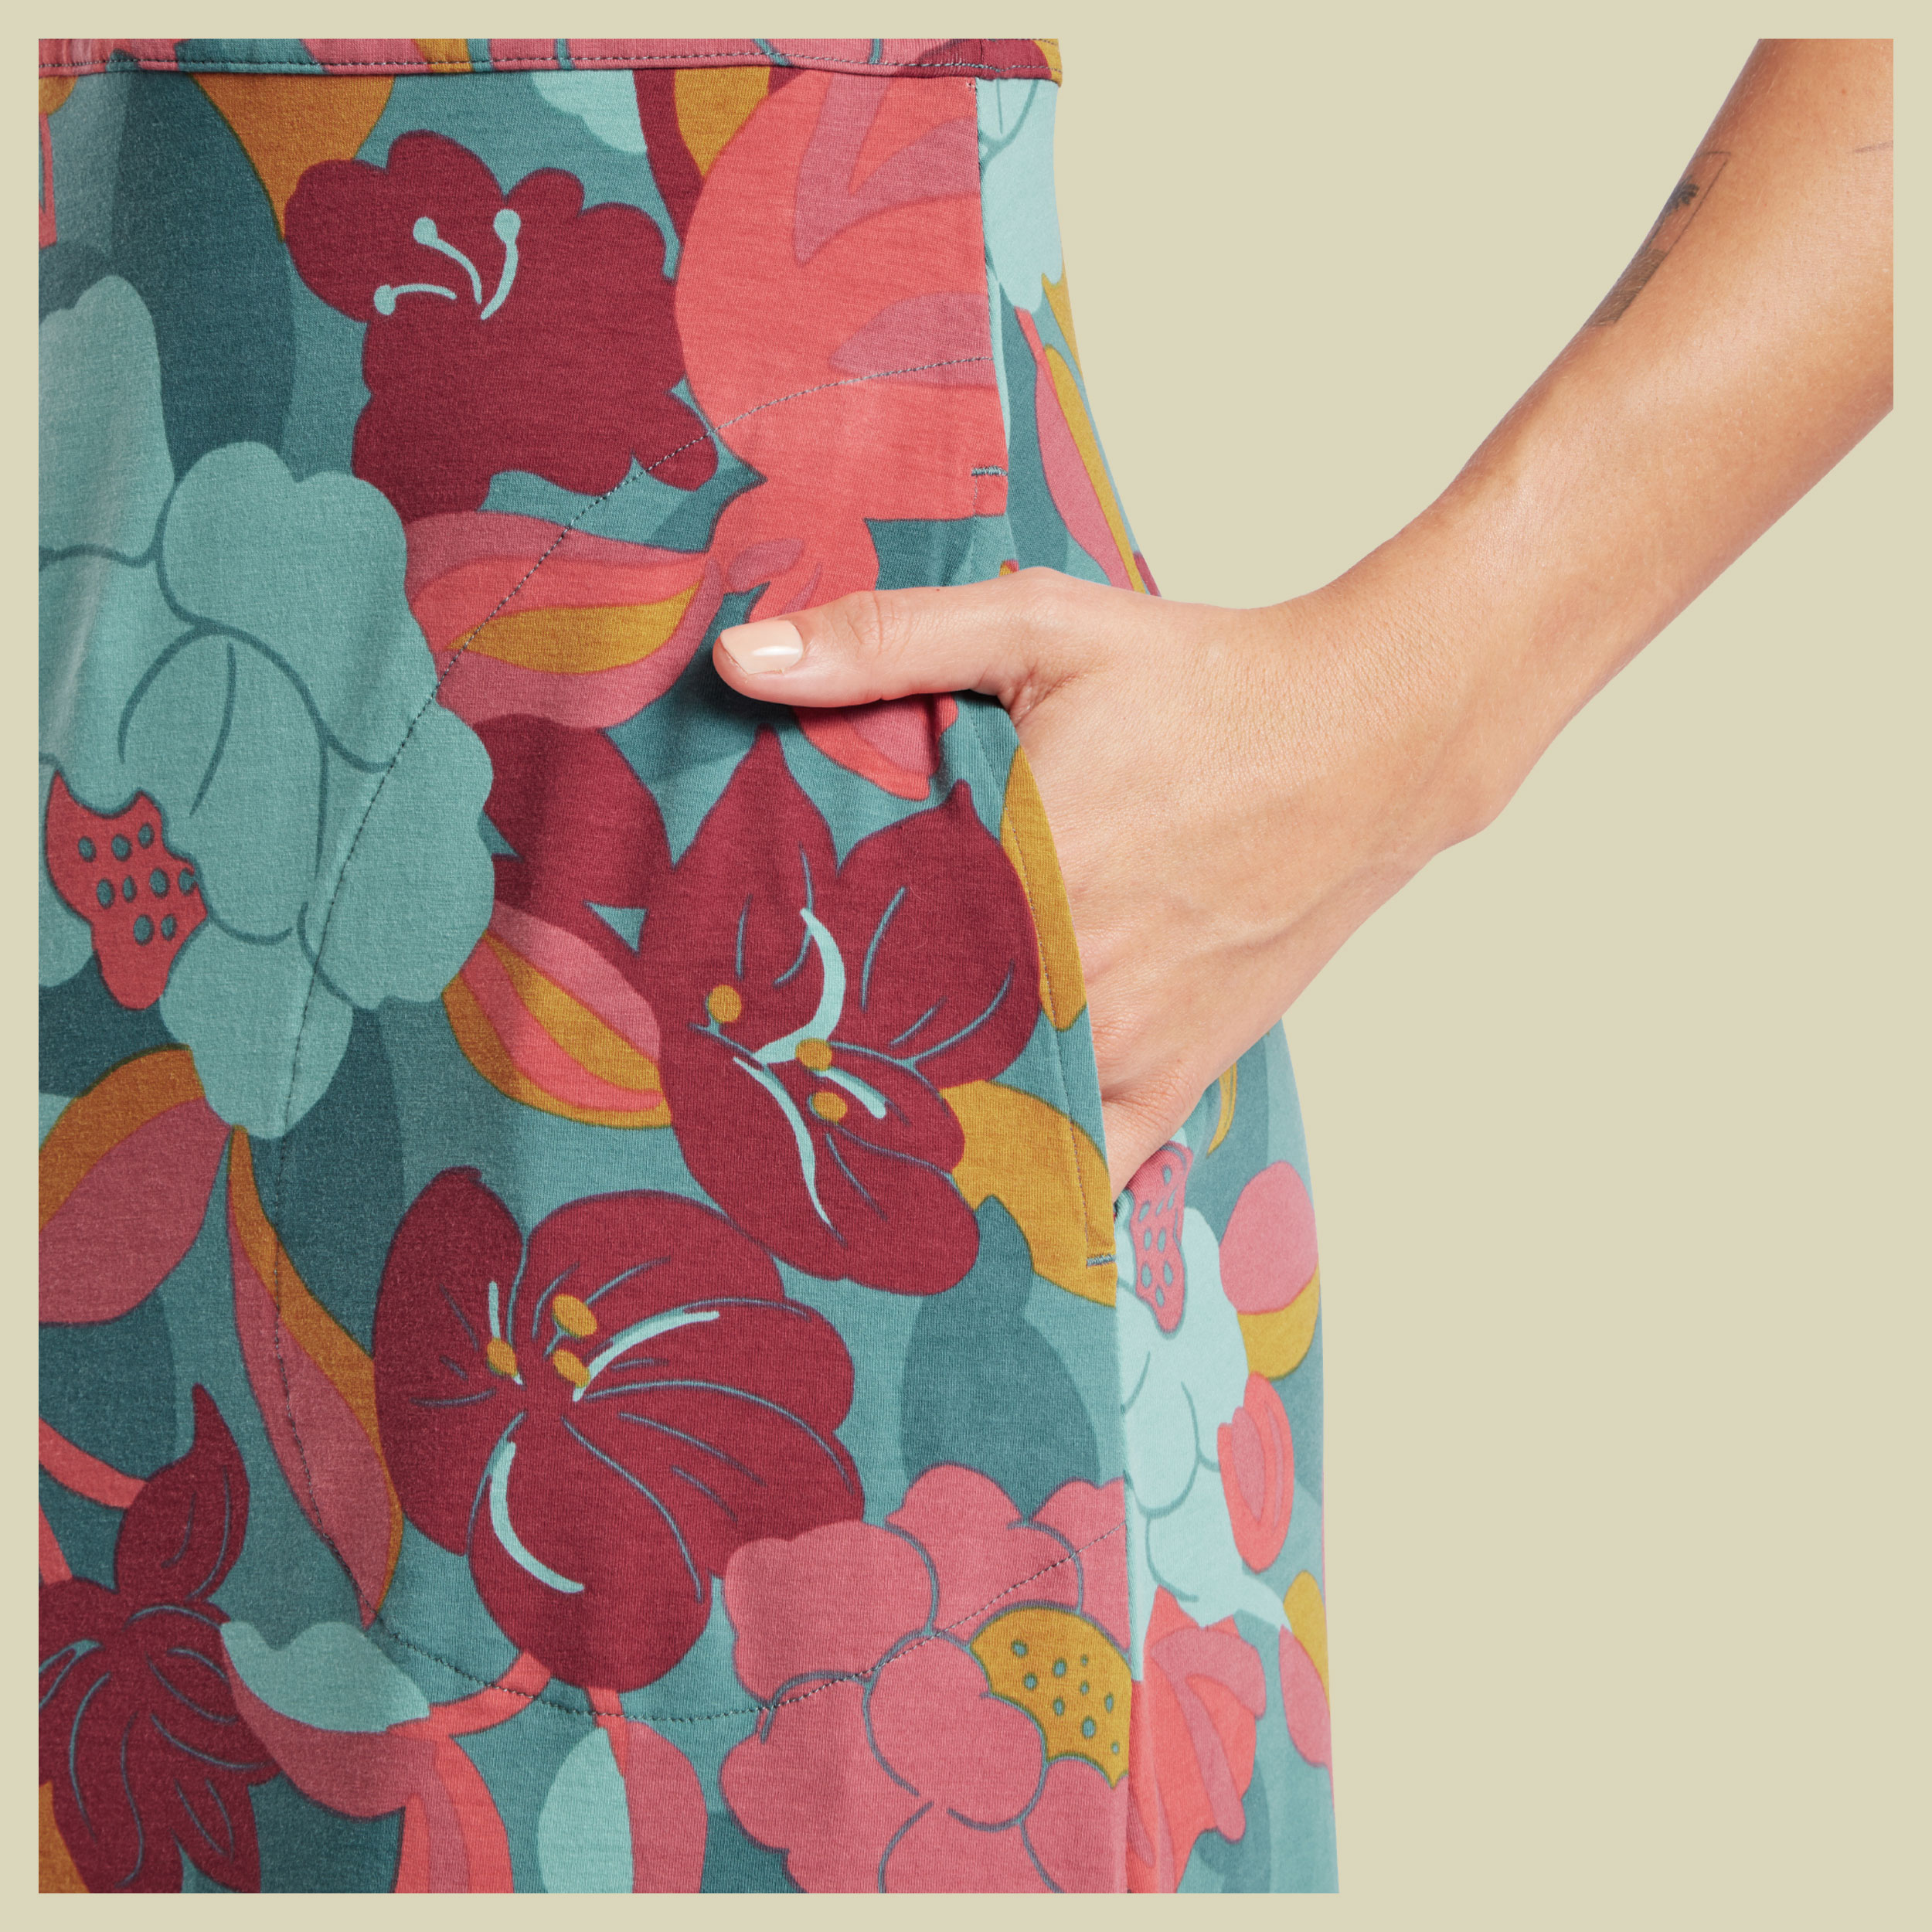 Neha Midi Dress Women mehrfarbig L - Farbe hydra oversize floral